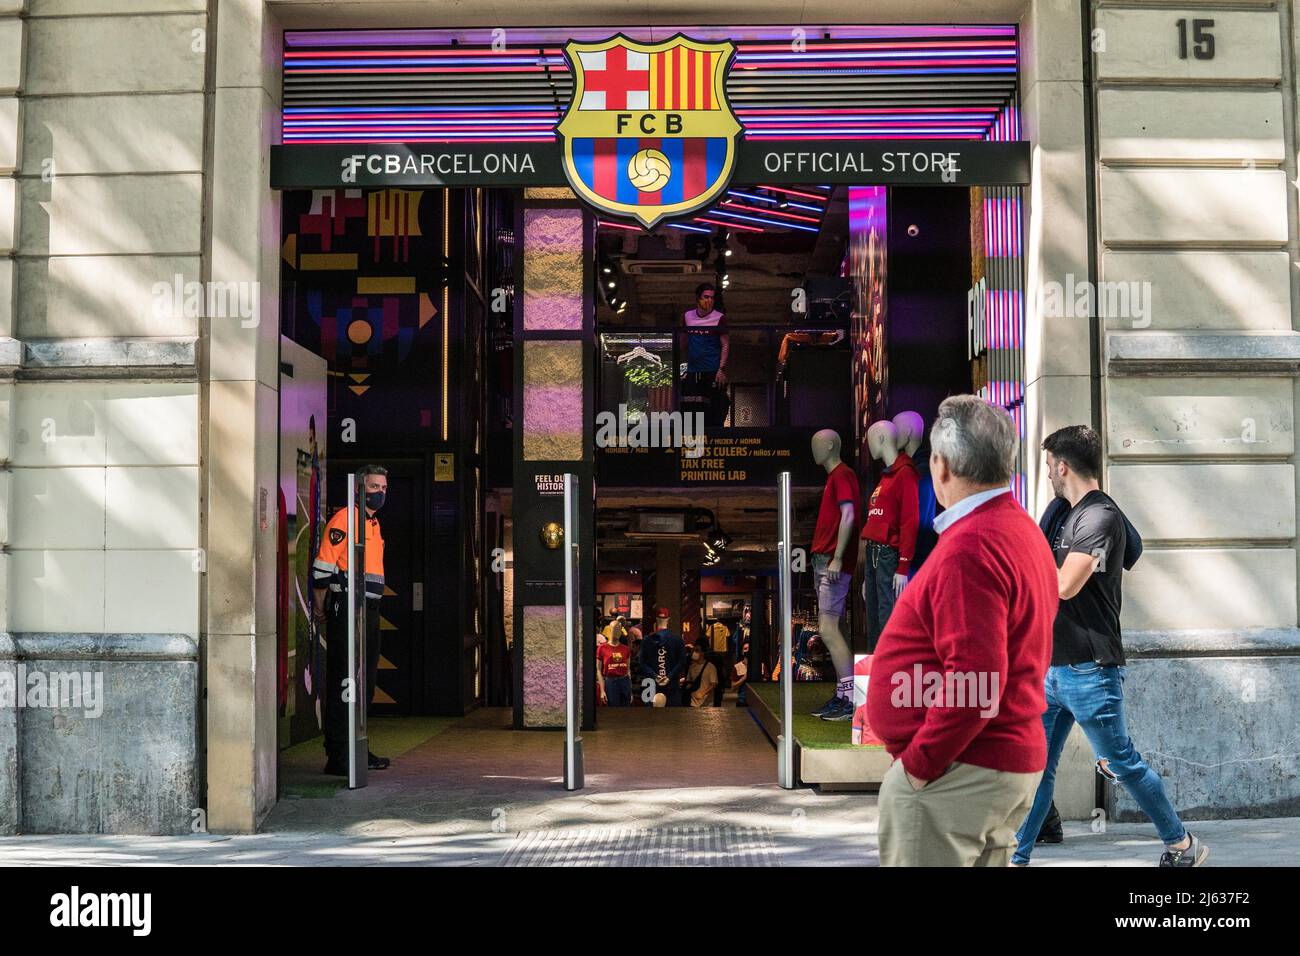 I pedoni passano accanto al negozio del FC Barcelona, squadra di calcio spagnola. Foto Stock